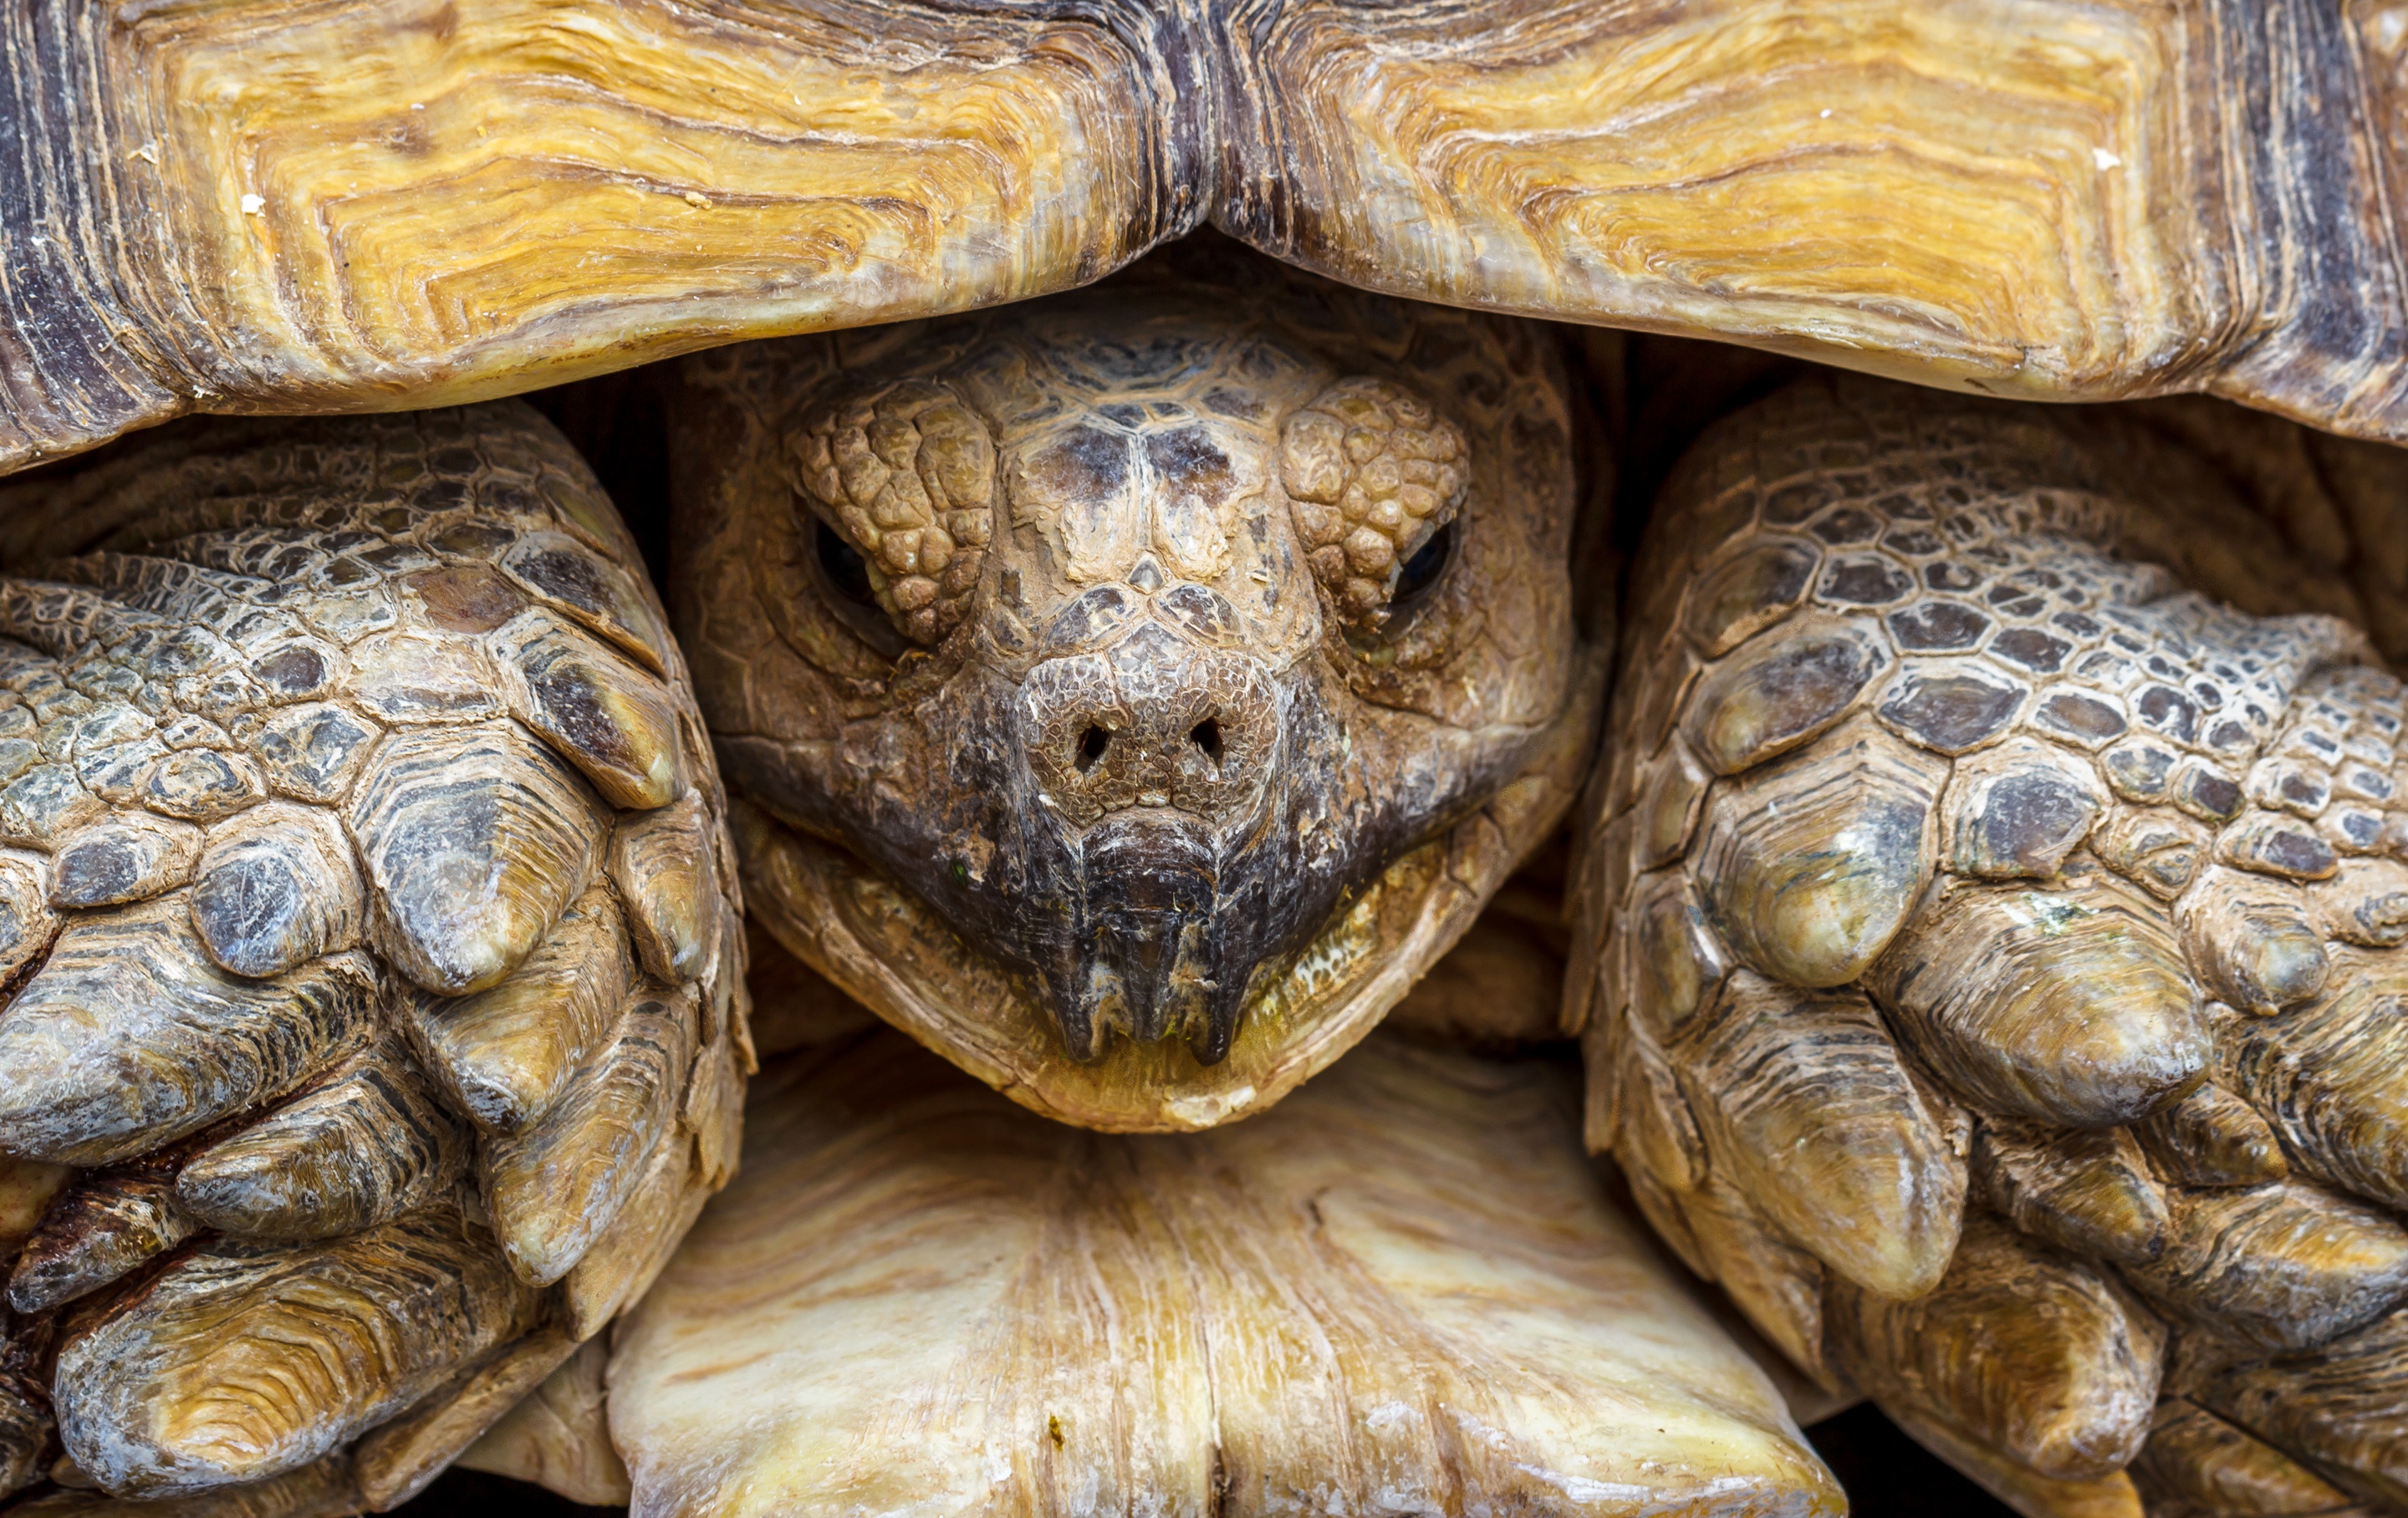 Turtle shell. Мадагаскарская клювогрудая черепаха. Среднеазиатская черепаха трехголовые. Среднеазиатская черепаха голова. Черепаховый черепаха.